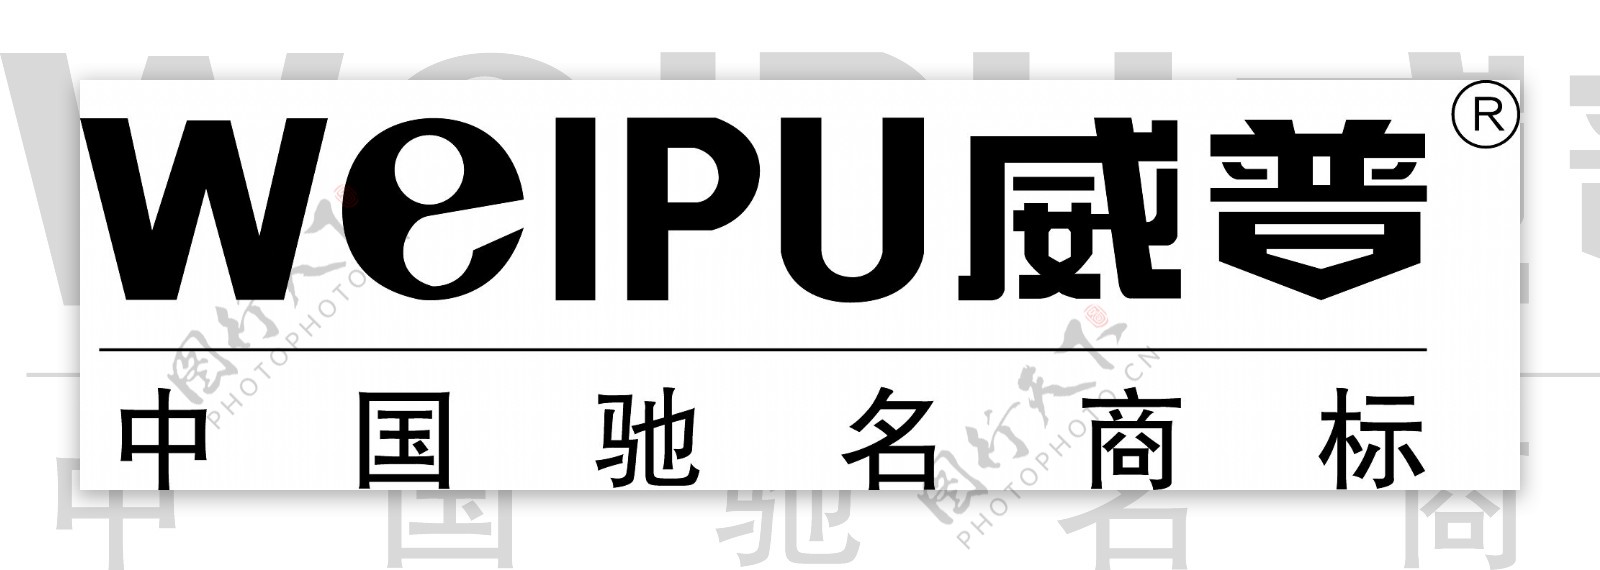 威普电器矢量logo图片